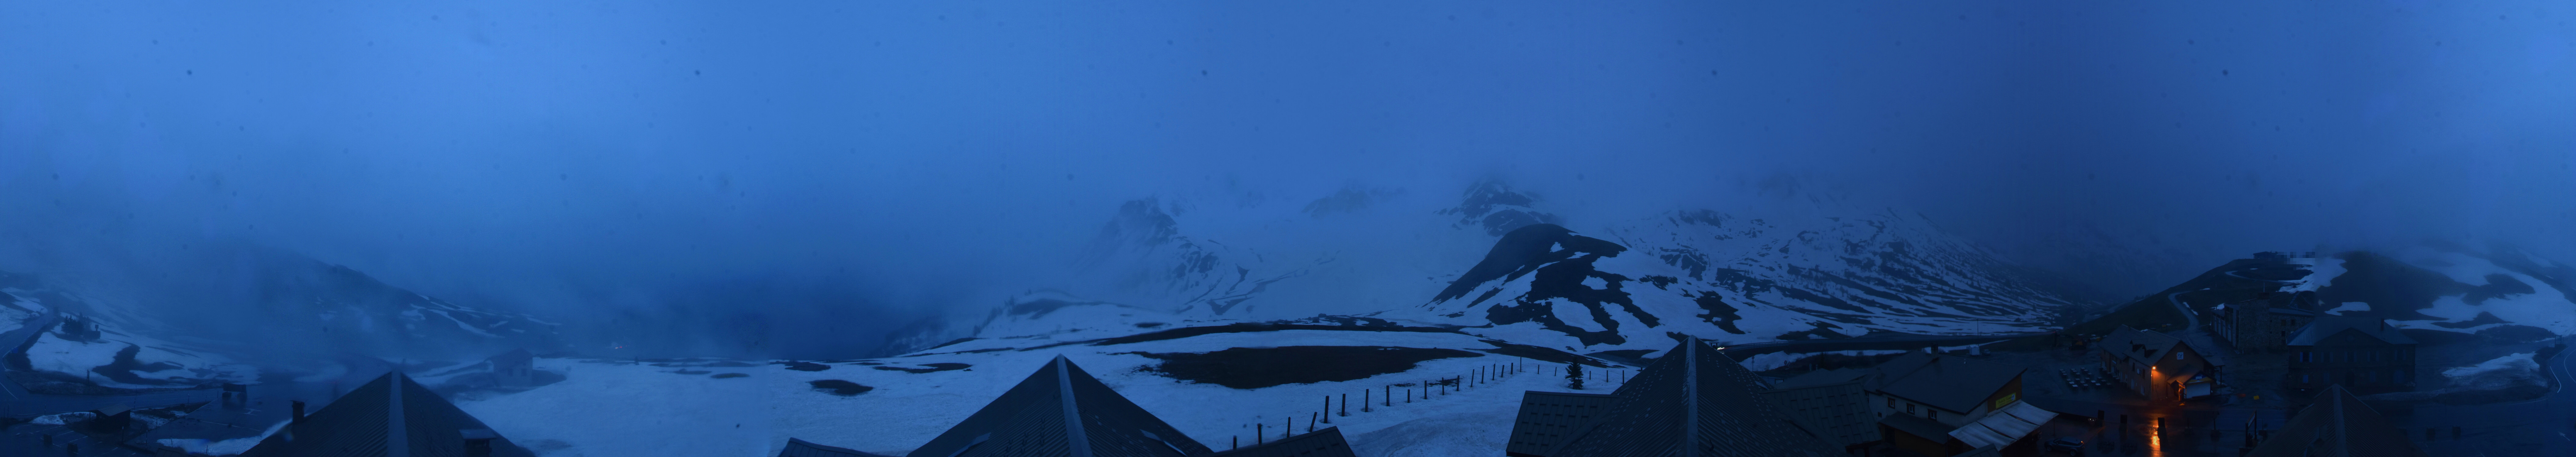 Webcam du col du Lautaret sur la D1091, au niveau du plus haut col français ouvert à la circulation automobile en hiver